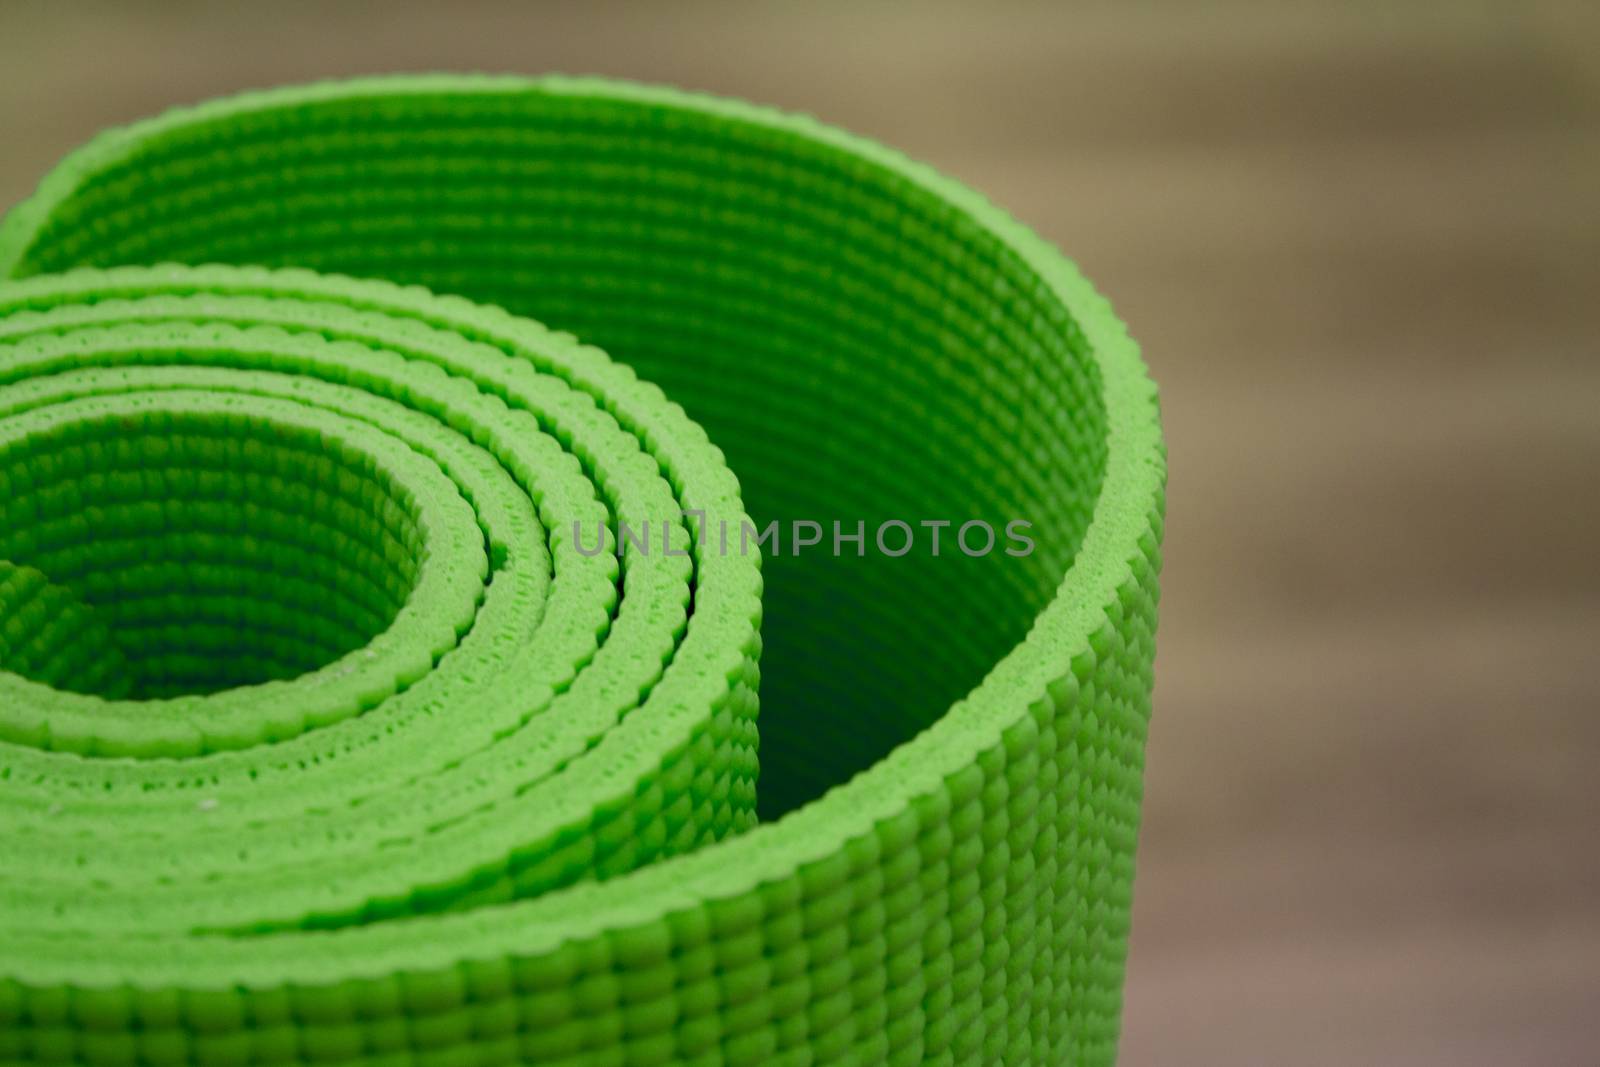 Green Shallow focus image of colorful, rolled up yoga mat. Fotografía de Gema Ibarra. Prohibida su utilización para cualquier uso sin autorización.Todos los derechos reservados.